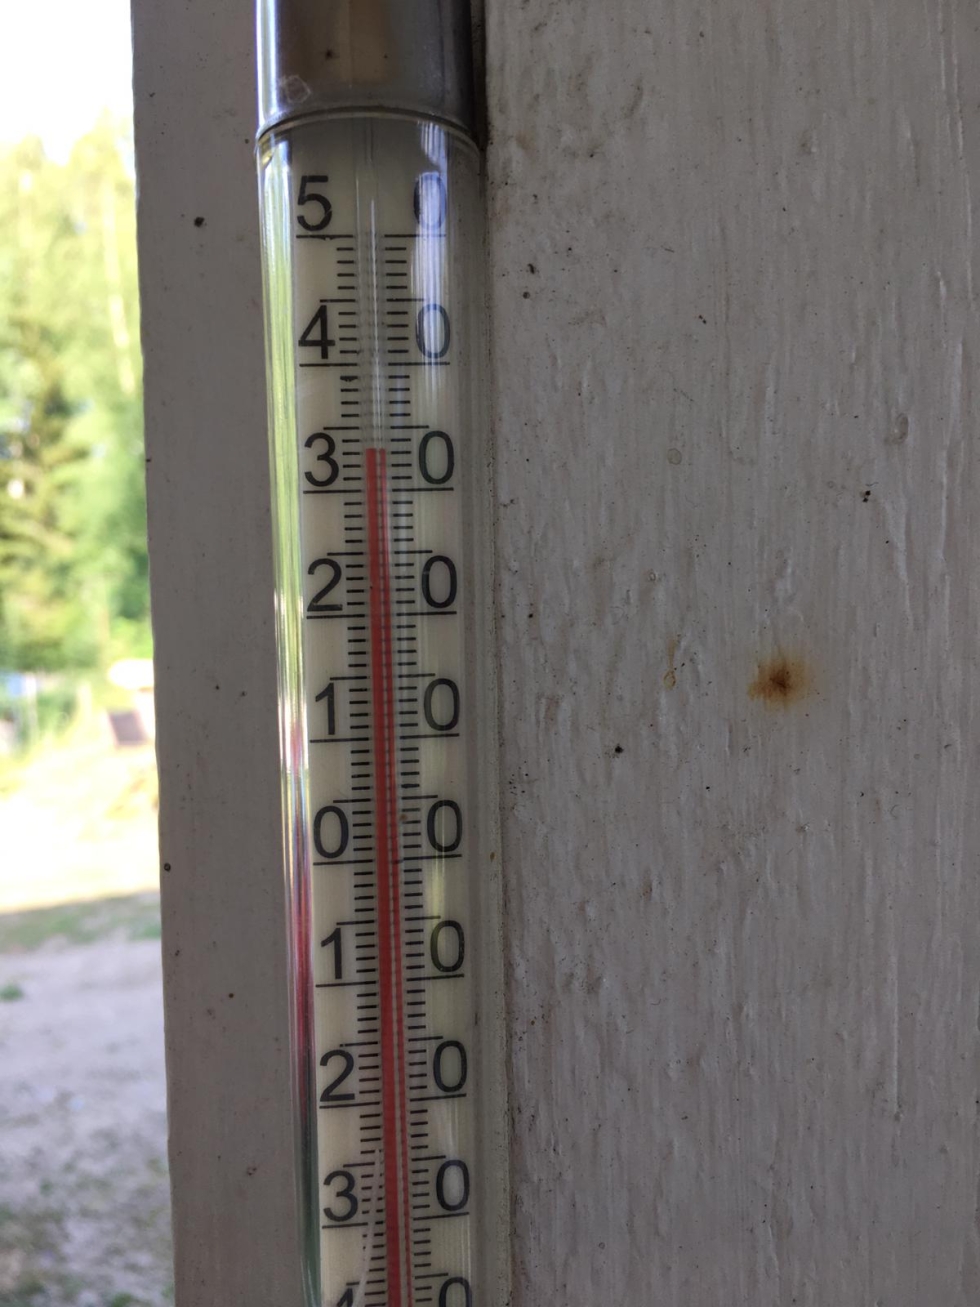 Lämpötila kipusi Joensuun seudulla kotimittareissa jopa yli 33 asteen 11. heinäkuuta.